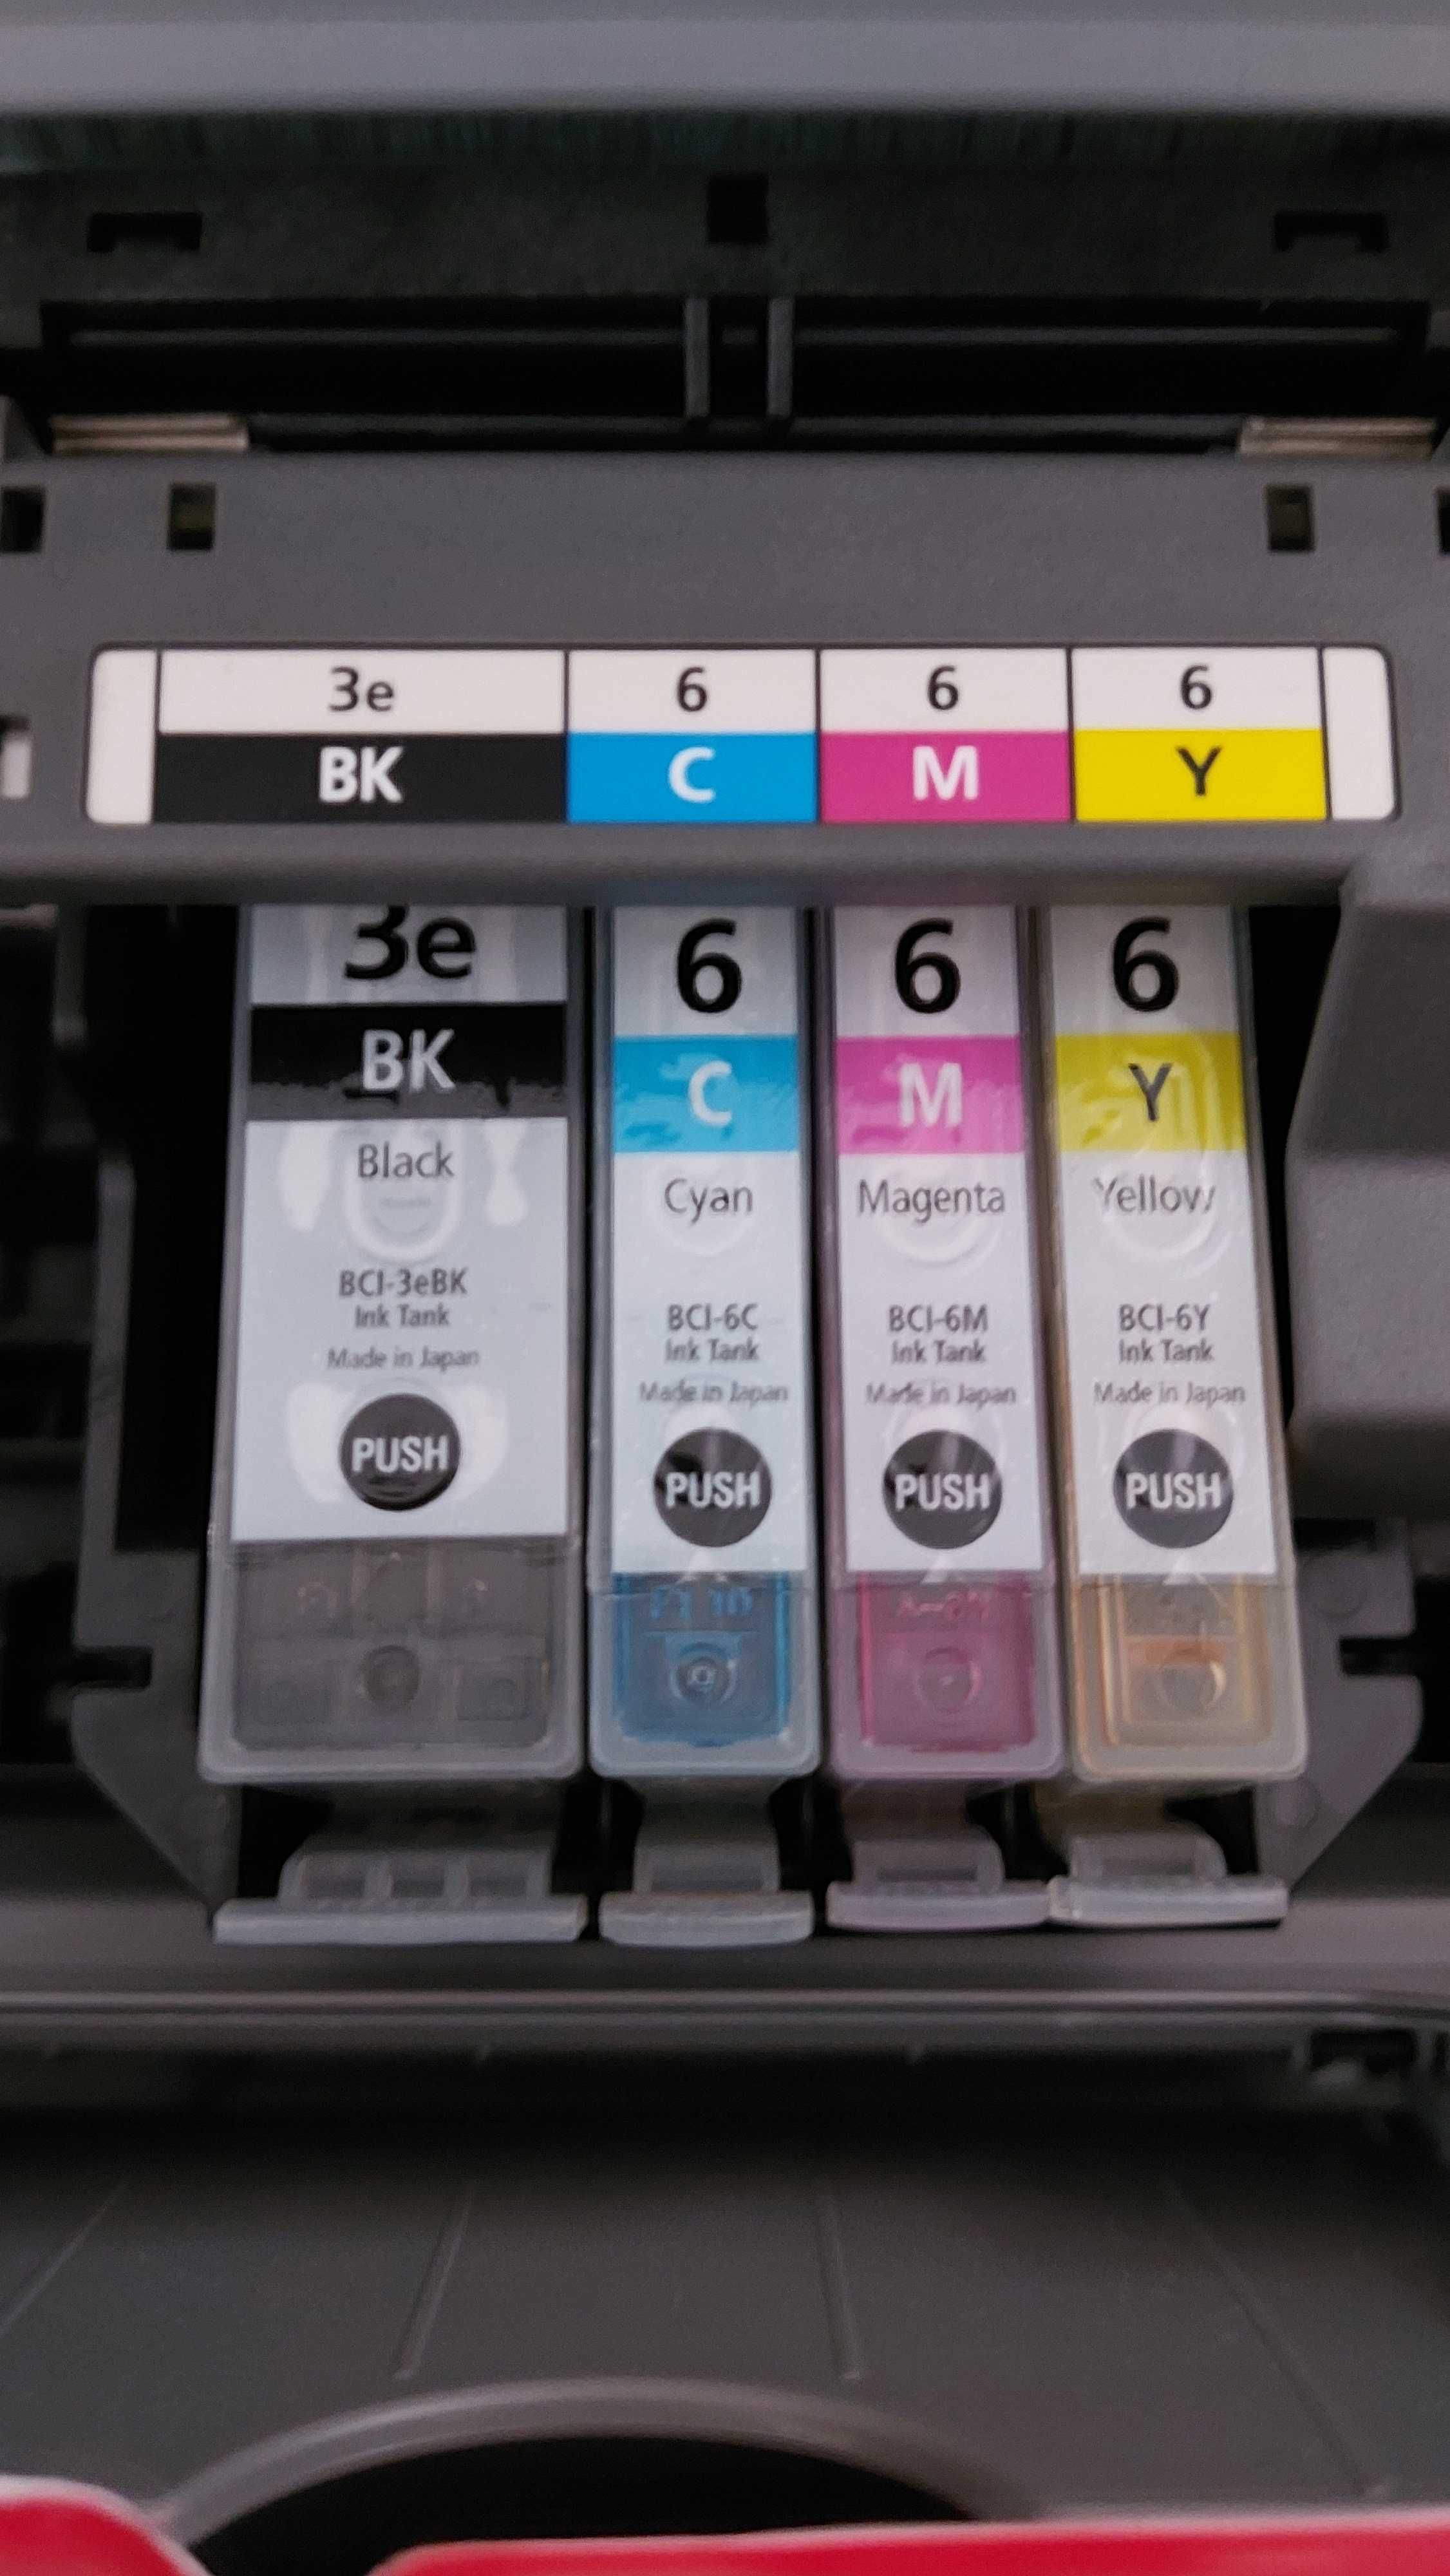 Тонери за Canon принтер BCI-6C,BCI-6M,BCI-6Y.3 цвята Суап,Жълт,Червен